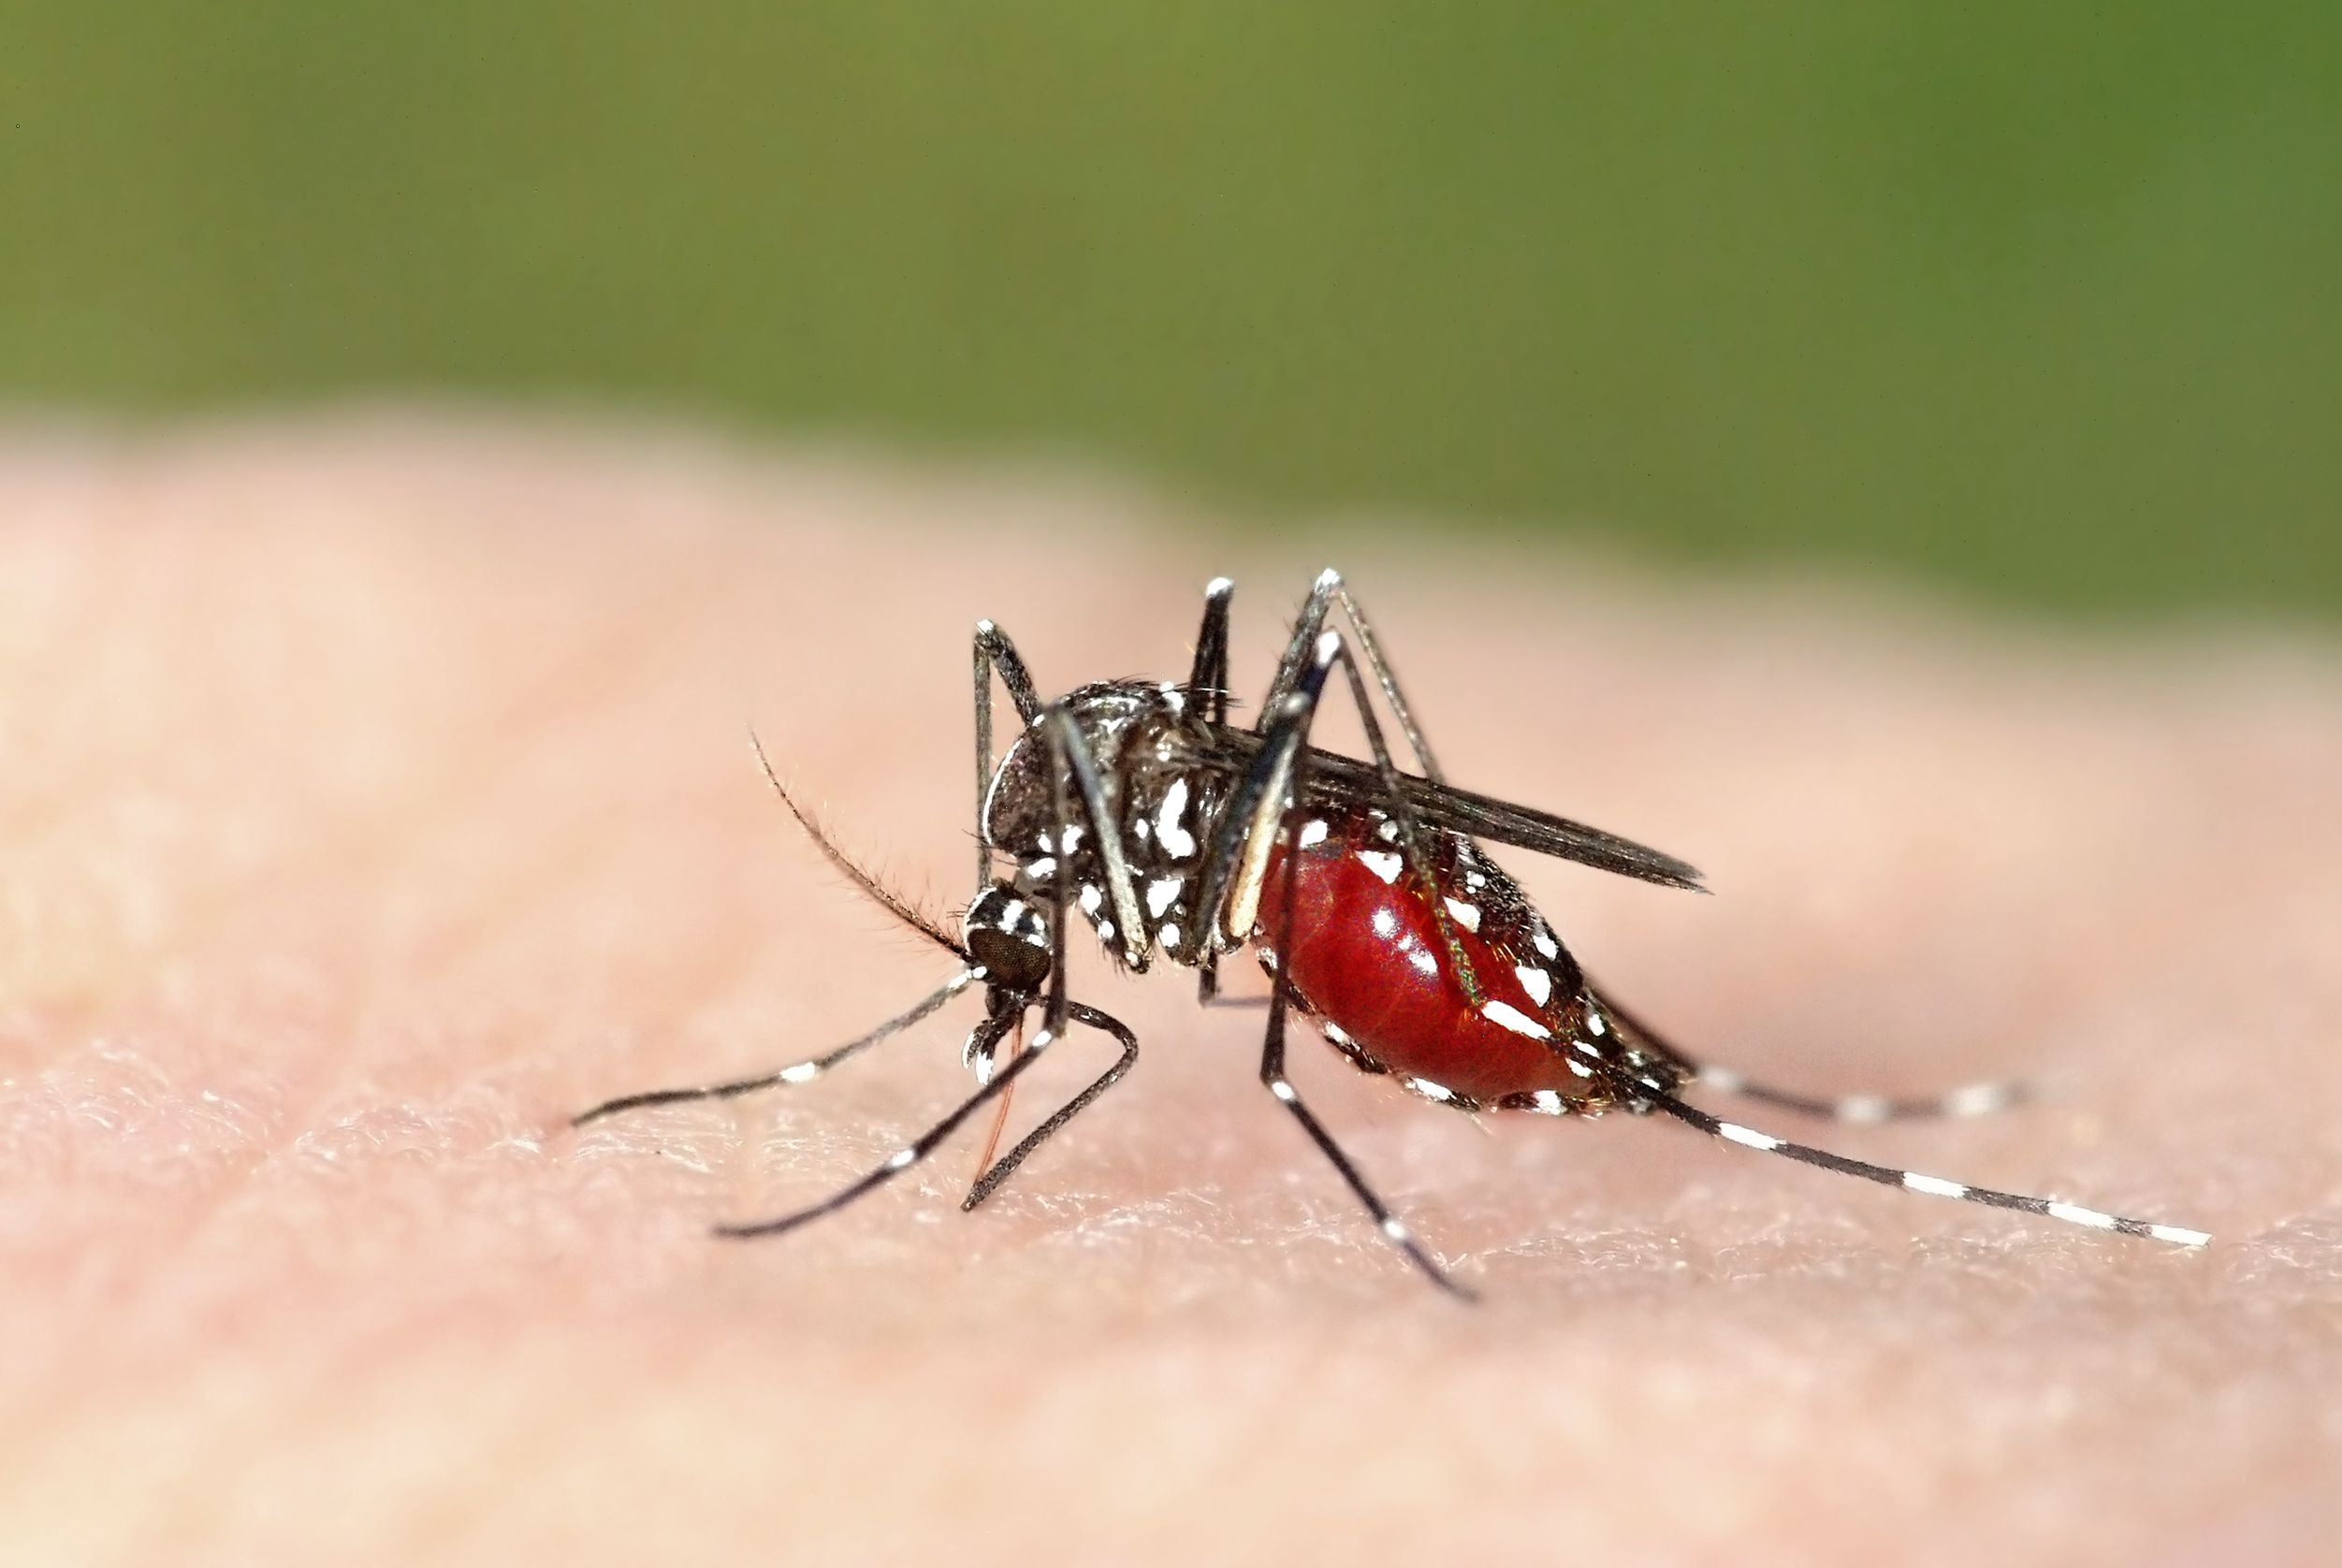 Gioca d’attacco contro le zanzare e altri insetti molesti: scegli l'antizanzare migliore!